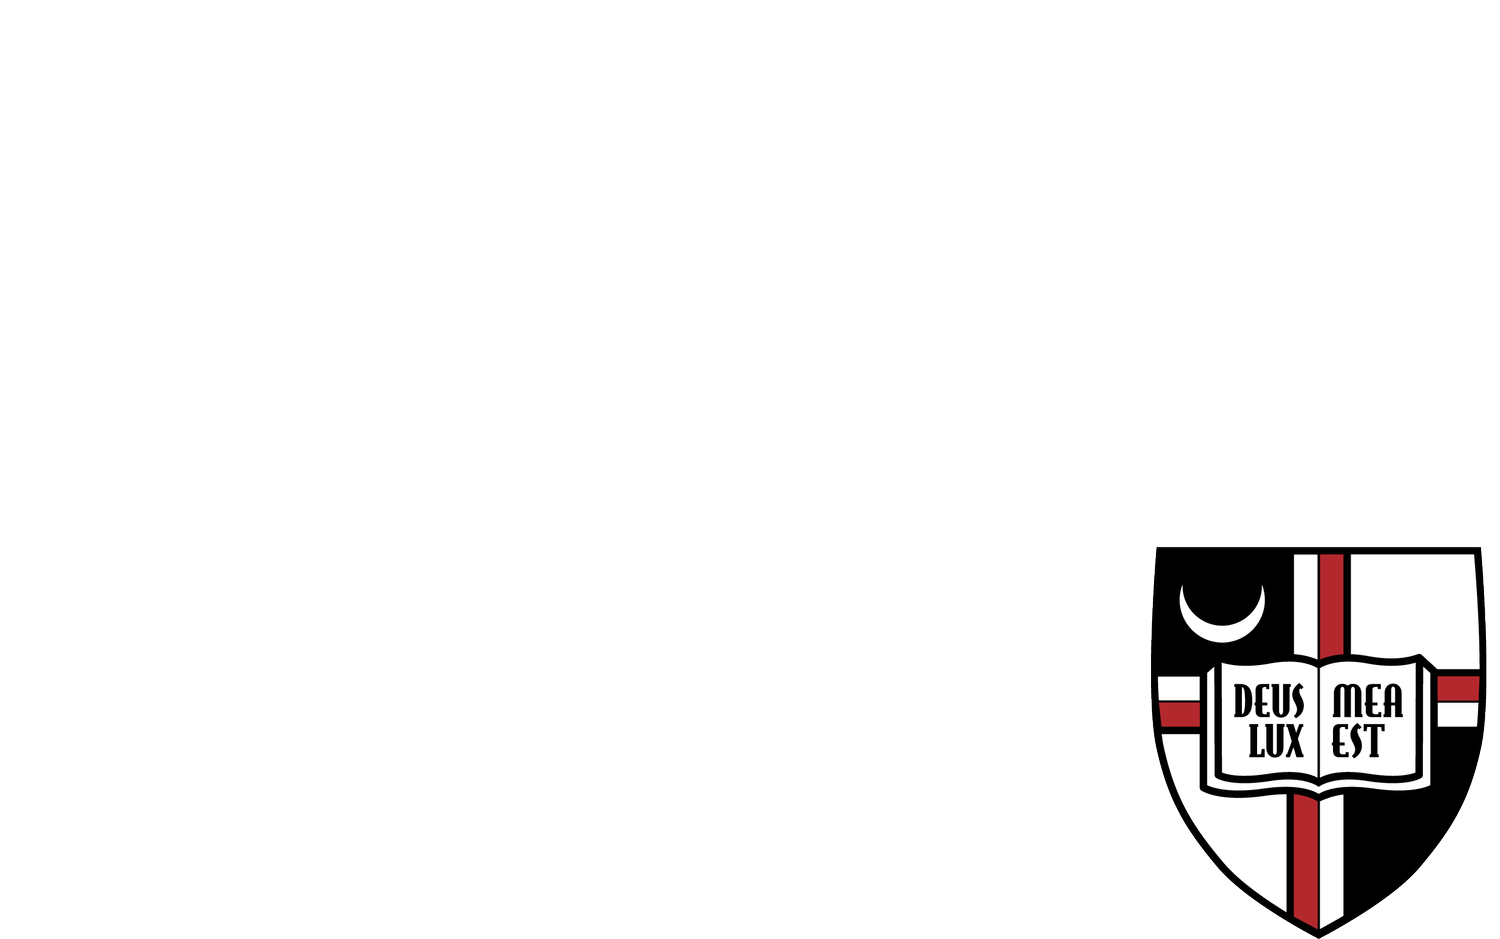 Catholic University - Lead with Light